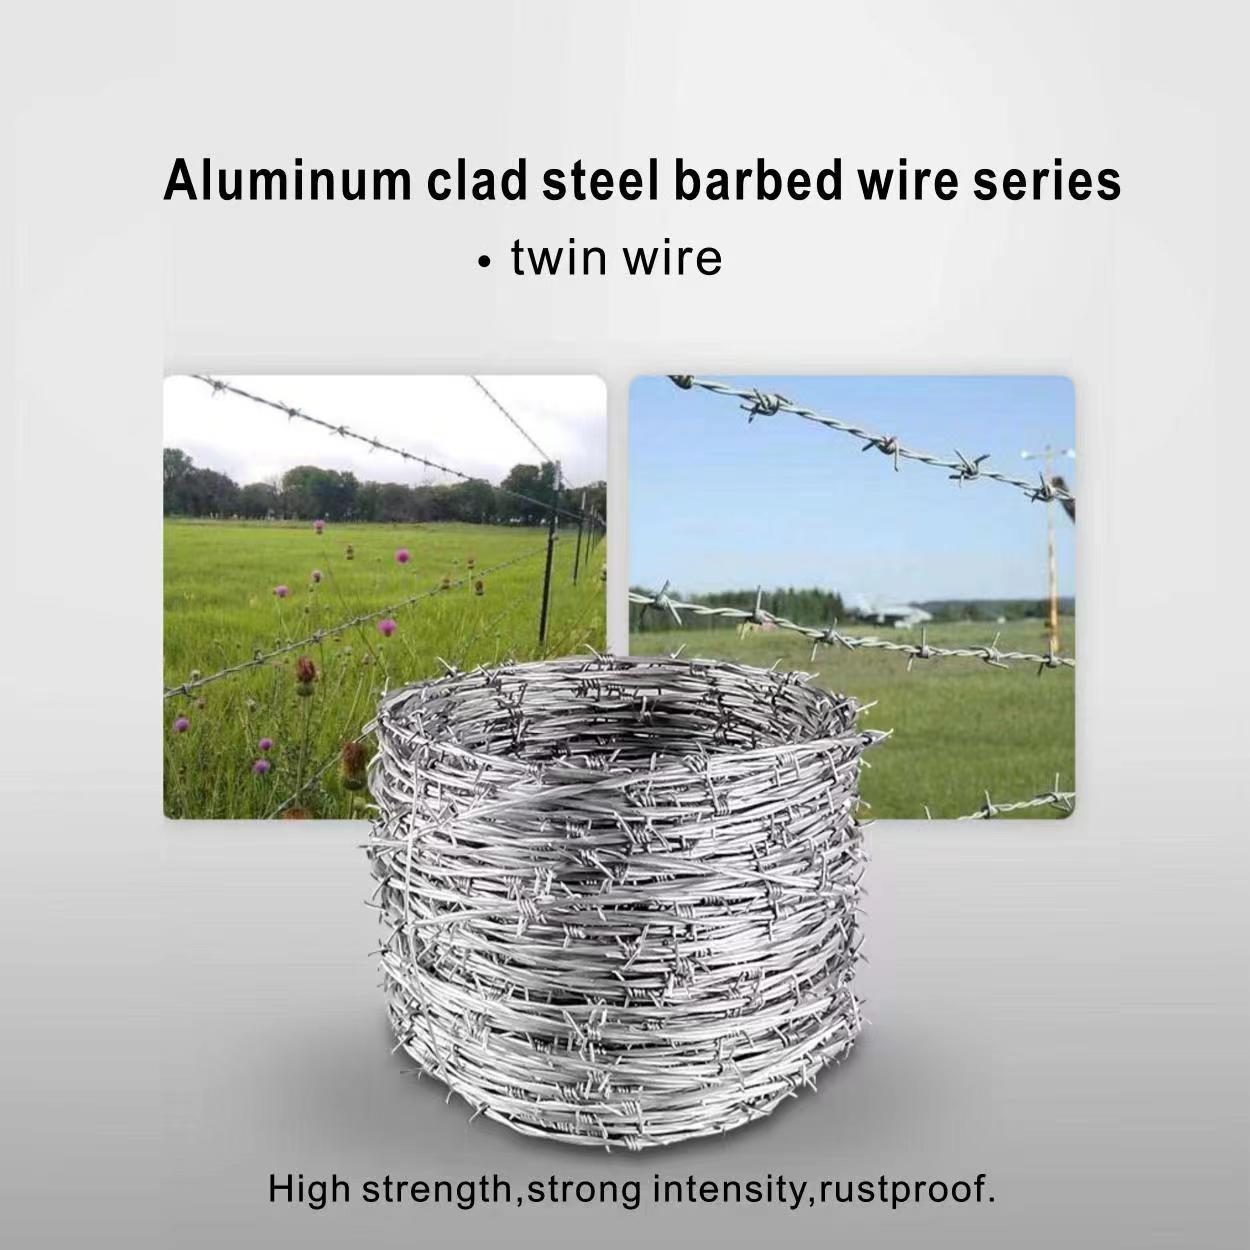 aluminum clad barbed wire